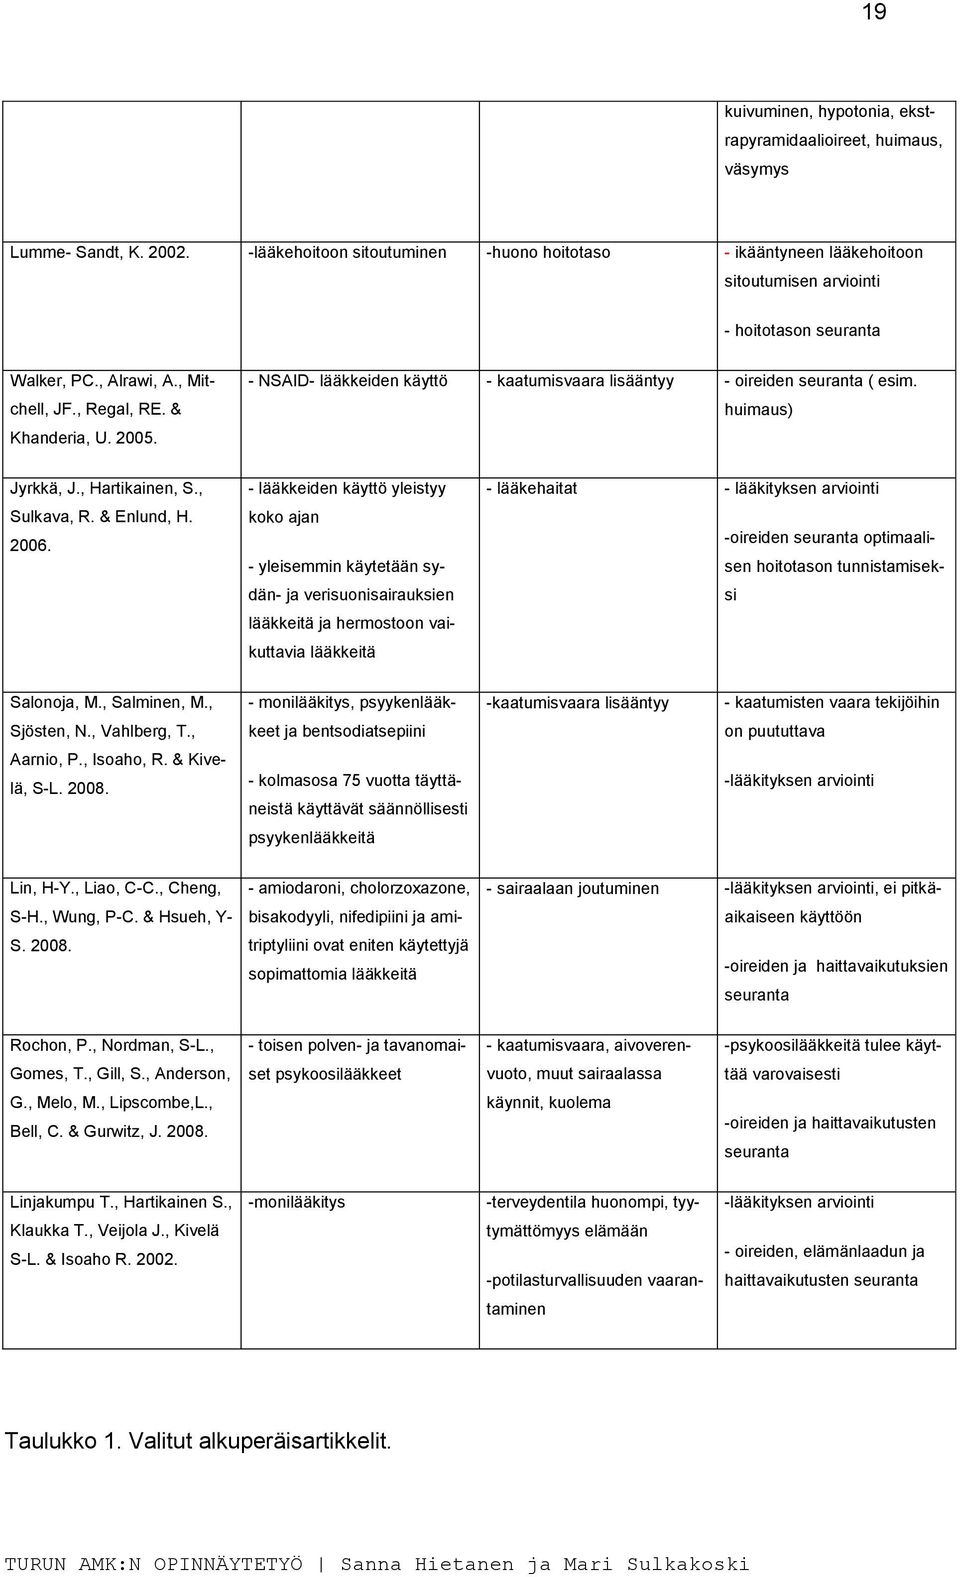 - NSAID- lääkkeiden käyttö - kaatumisvaara lisääntyy - oireiden seuranta ( esim. huimaus) Jyrkkä, J., Hartikainen, S., Sulkava, R. & Enlund, H. 2006.